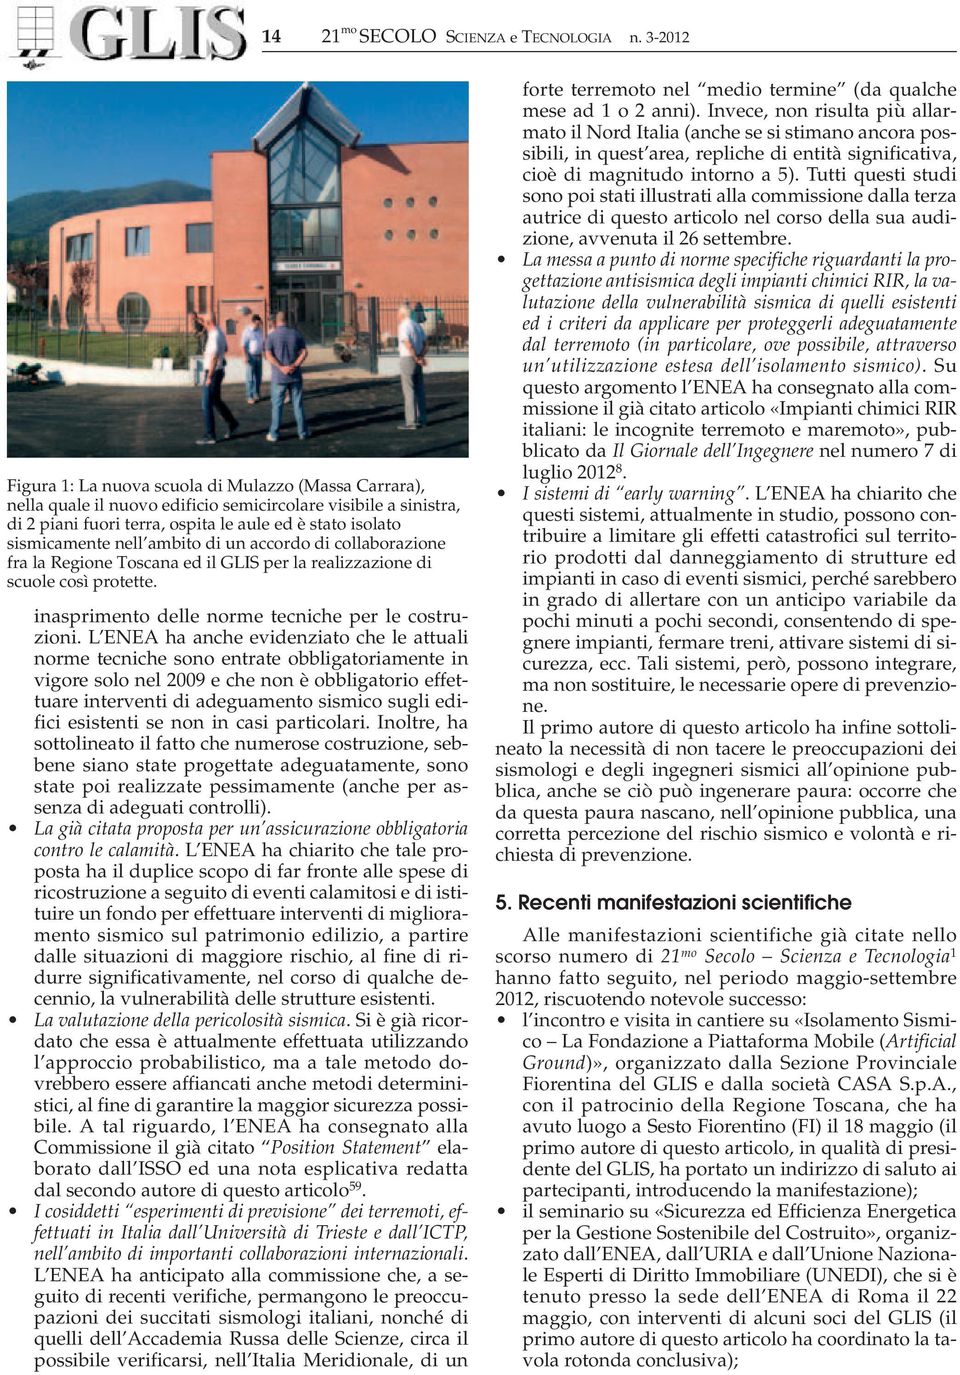 nell ambito di un accordo di collaborazione fra la Regione Toscana ed il GLIS per la realizzazione di scuole così protette. inasprimento delle norme tecniche per le costruzioni.